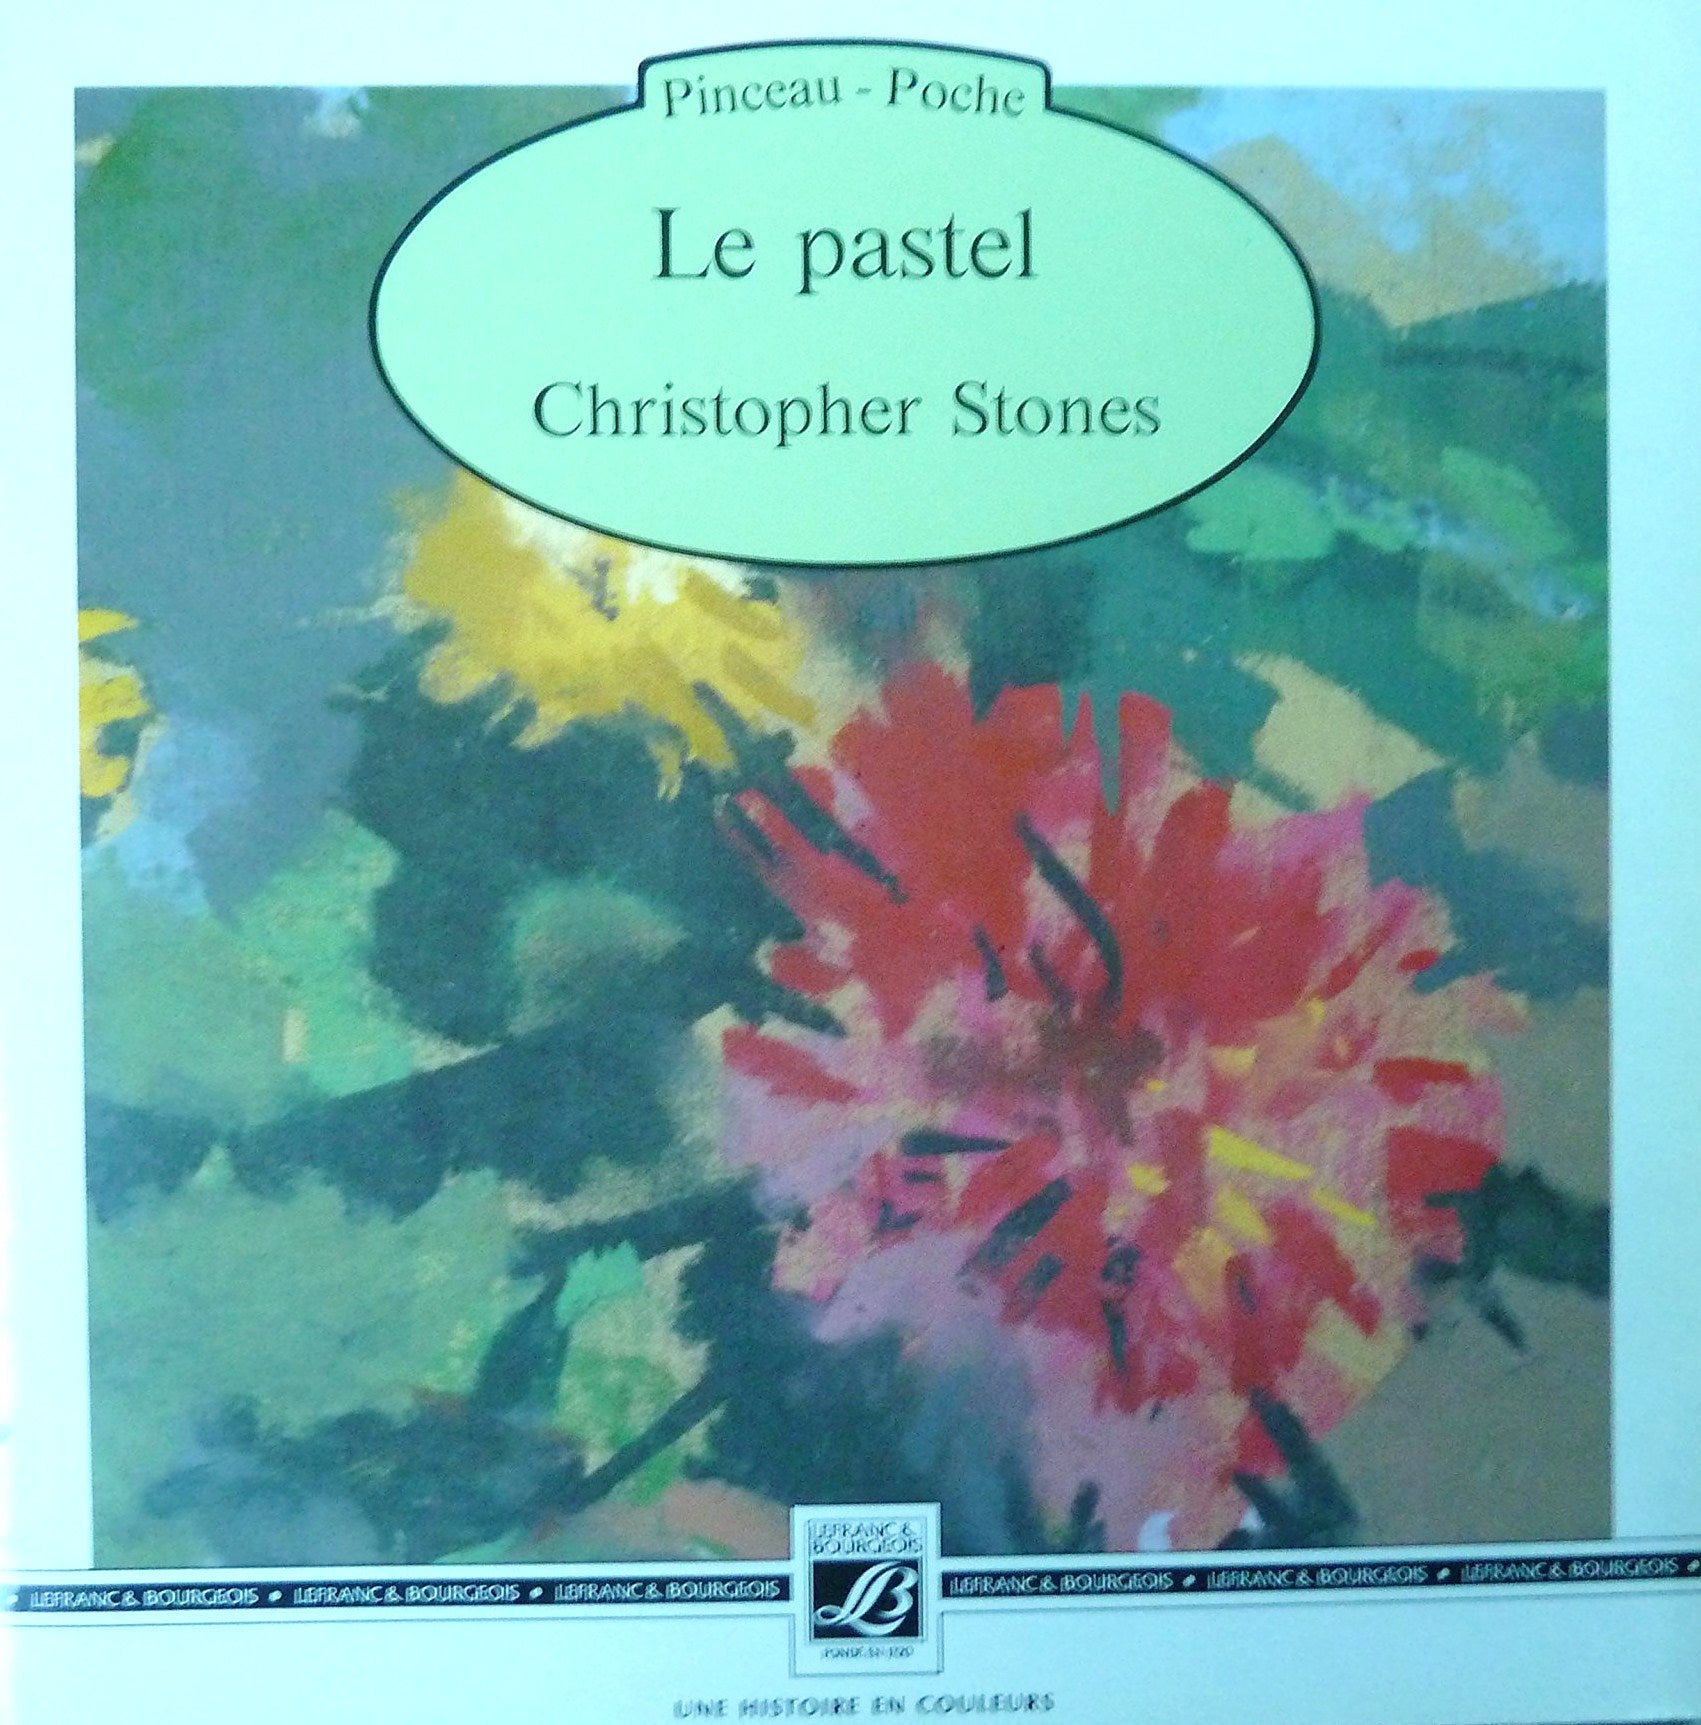 Livre ISBN 2249222886 Pinceau-Poche : Le pastel (Christopher Stones)